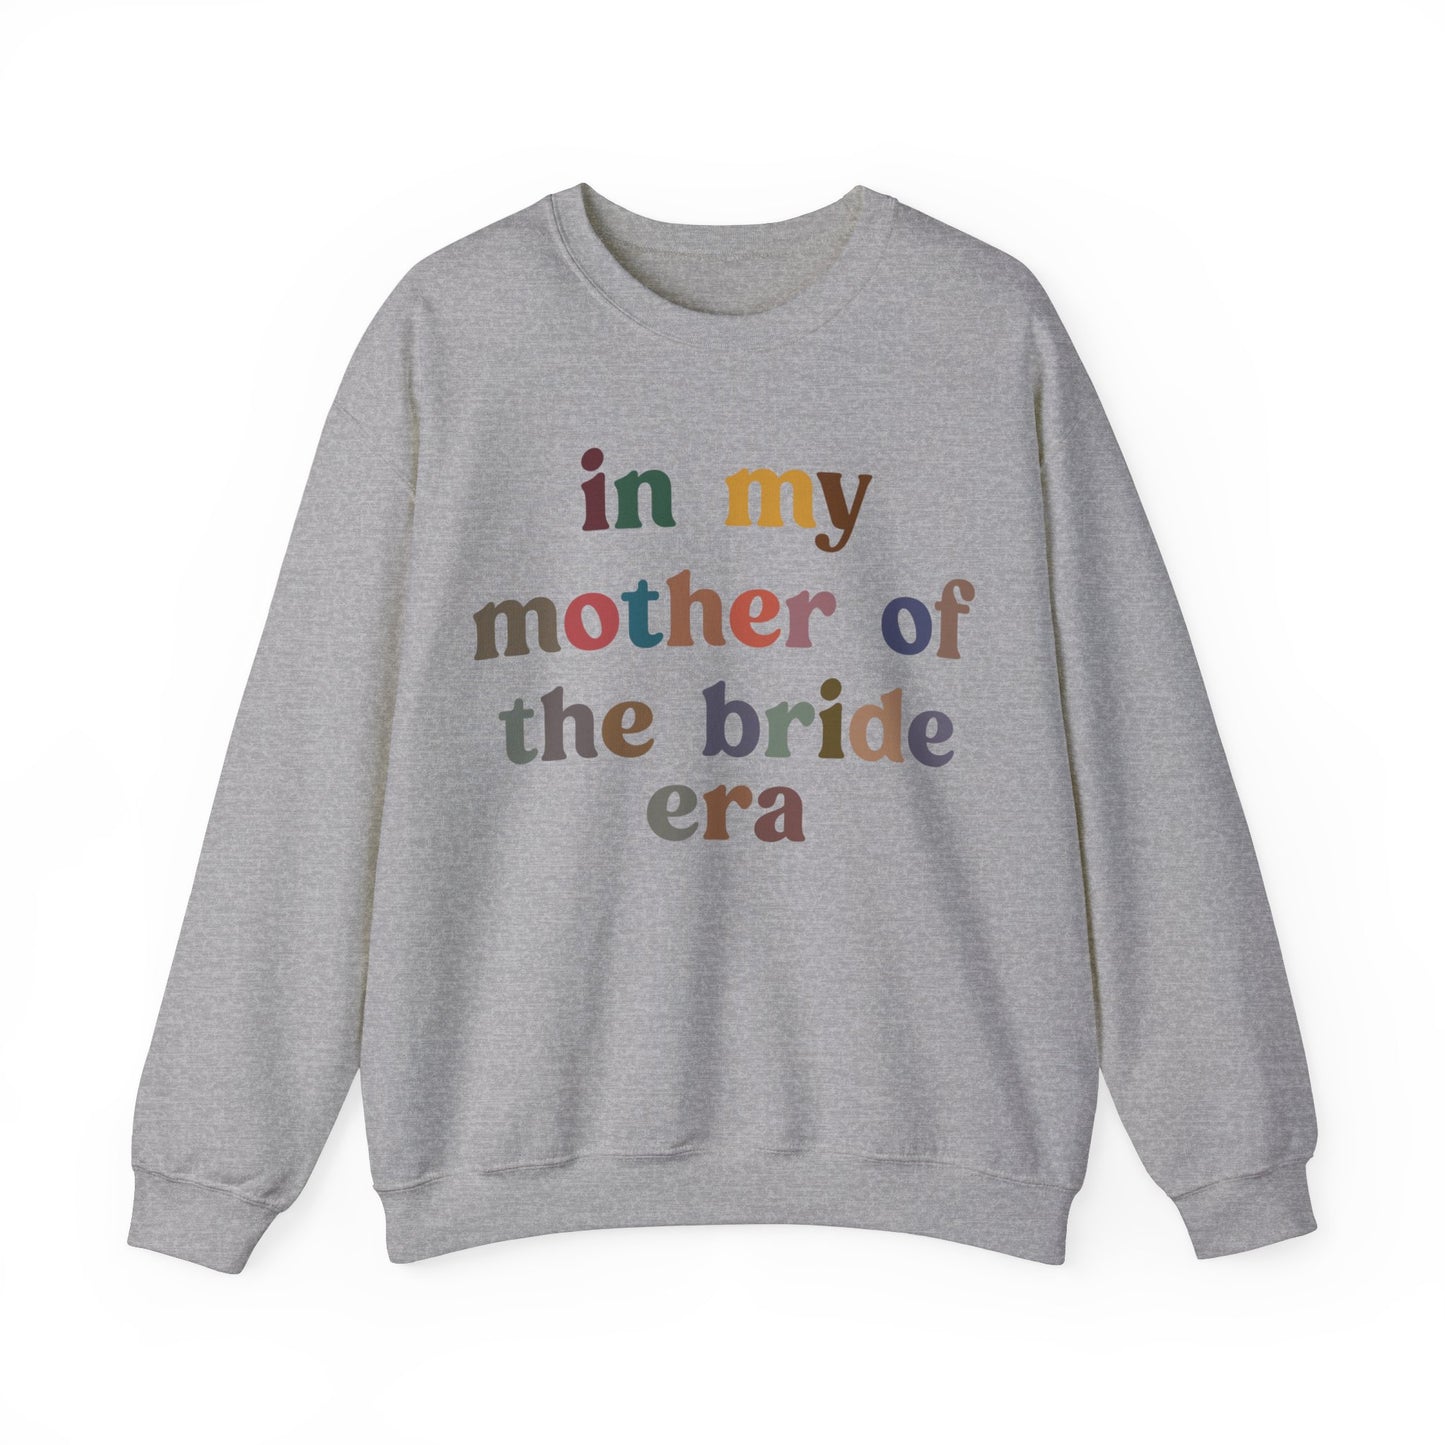 In My Mother of the Bride Era Sweatshirt, Bridal Party Sweatshirt for Mom, Retro Wedding Sweatshirt for Mom, Engagement Sweatshirt, S1350